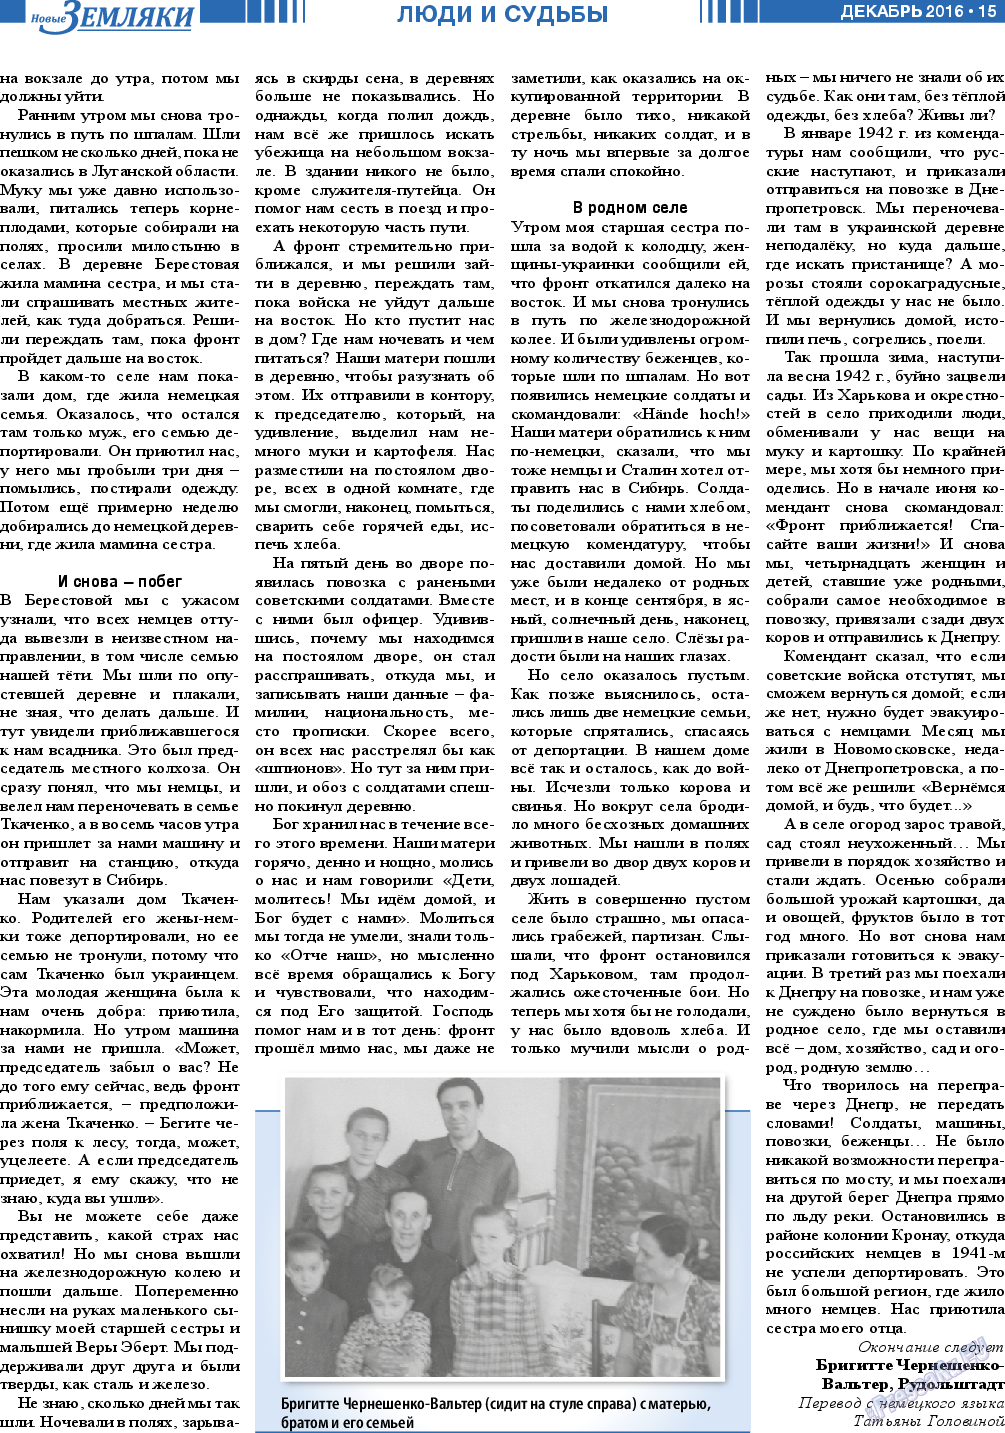 Новые Земляки, газета. 2016 №12 стр.15